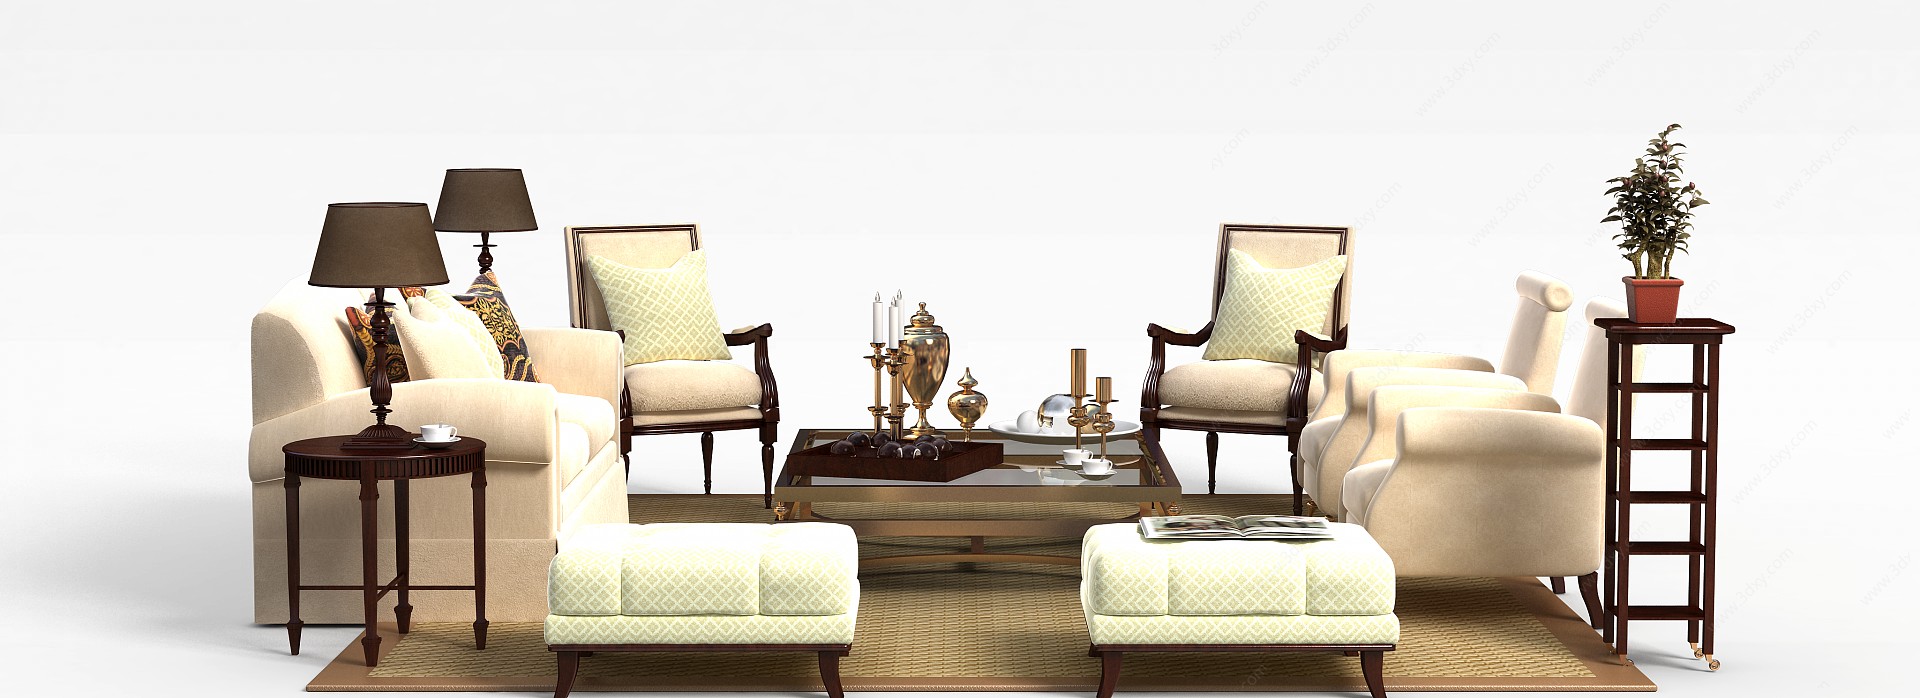 现代精品布艺沙发茶几组合3D模型